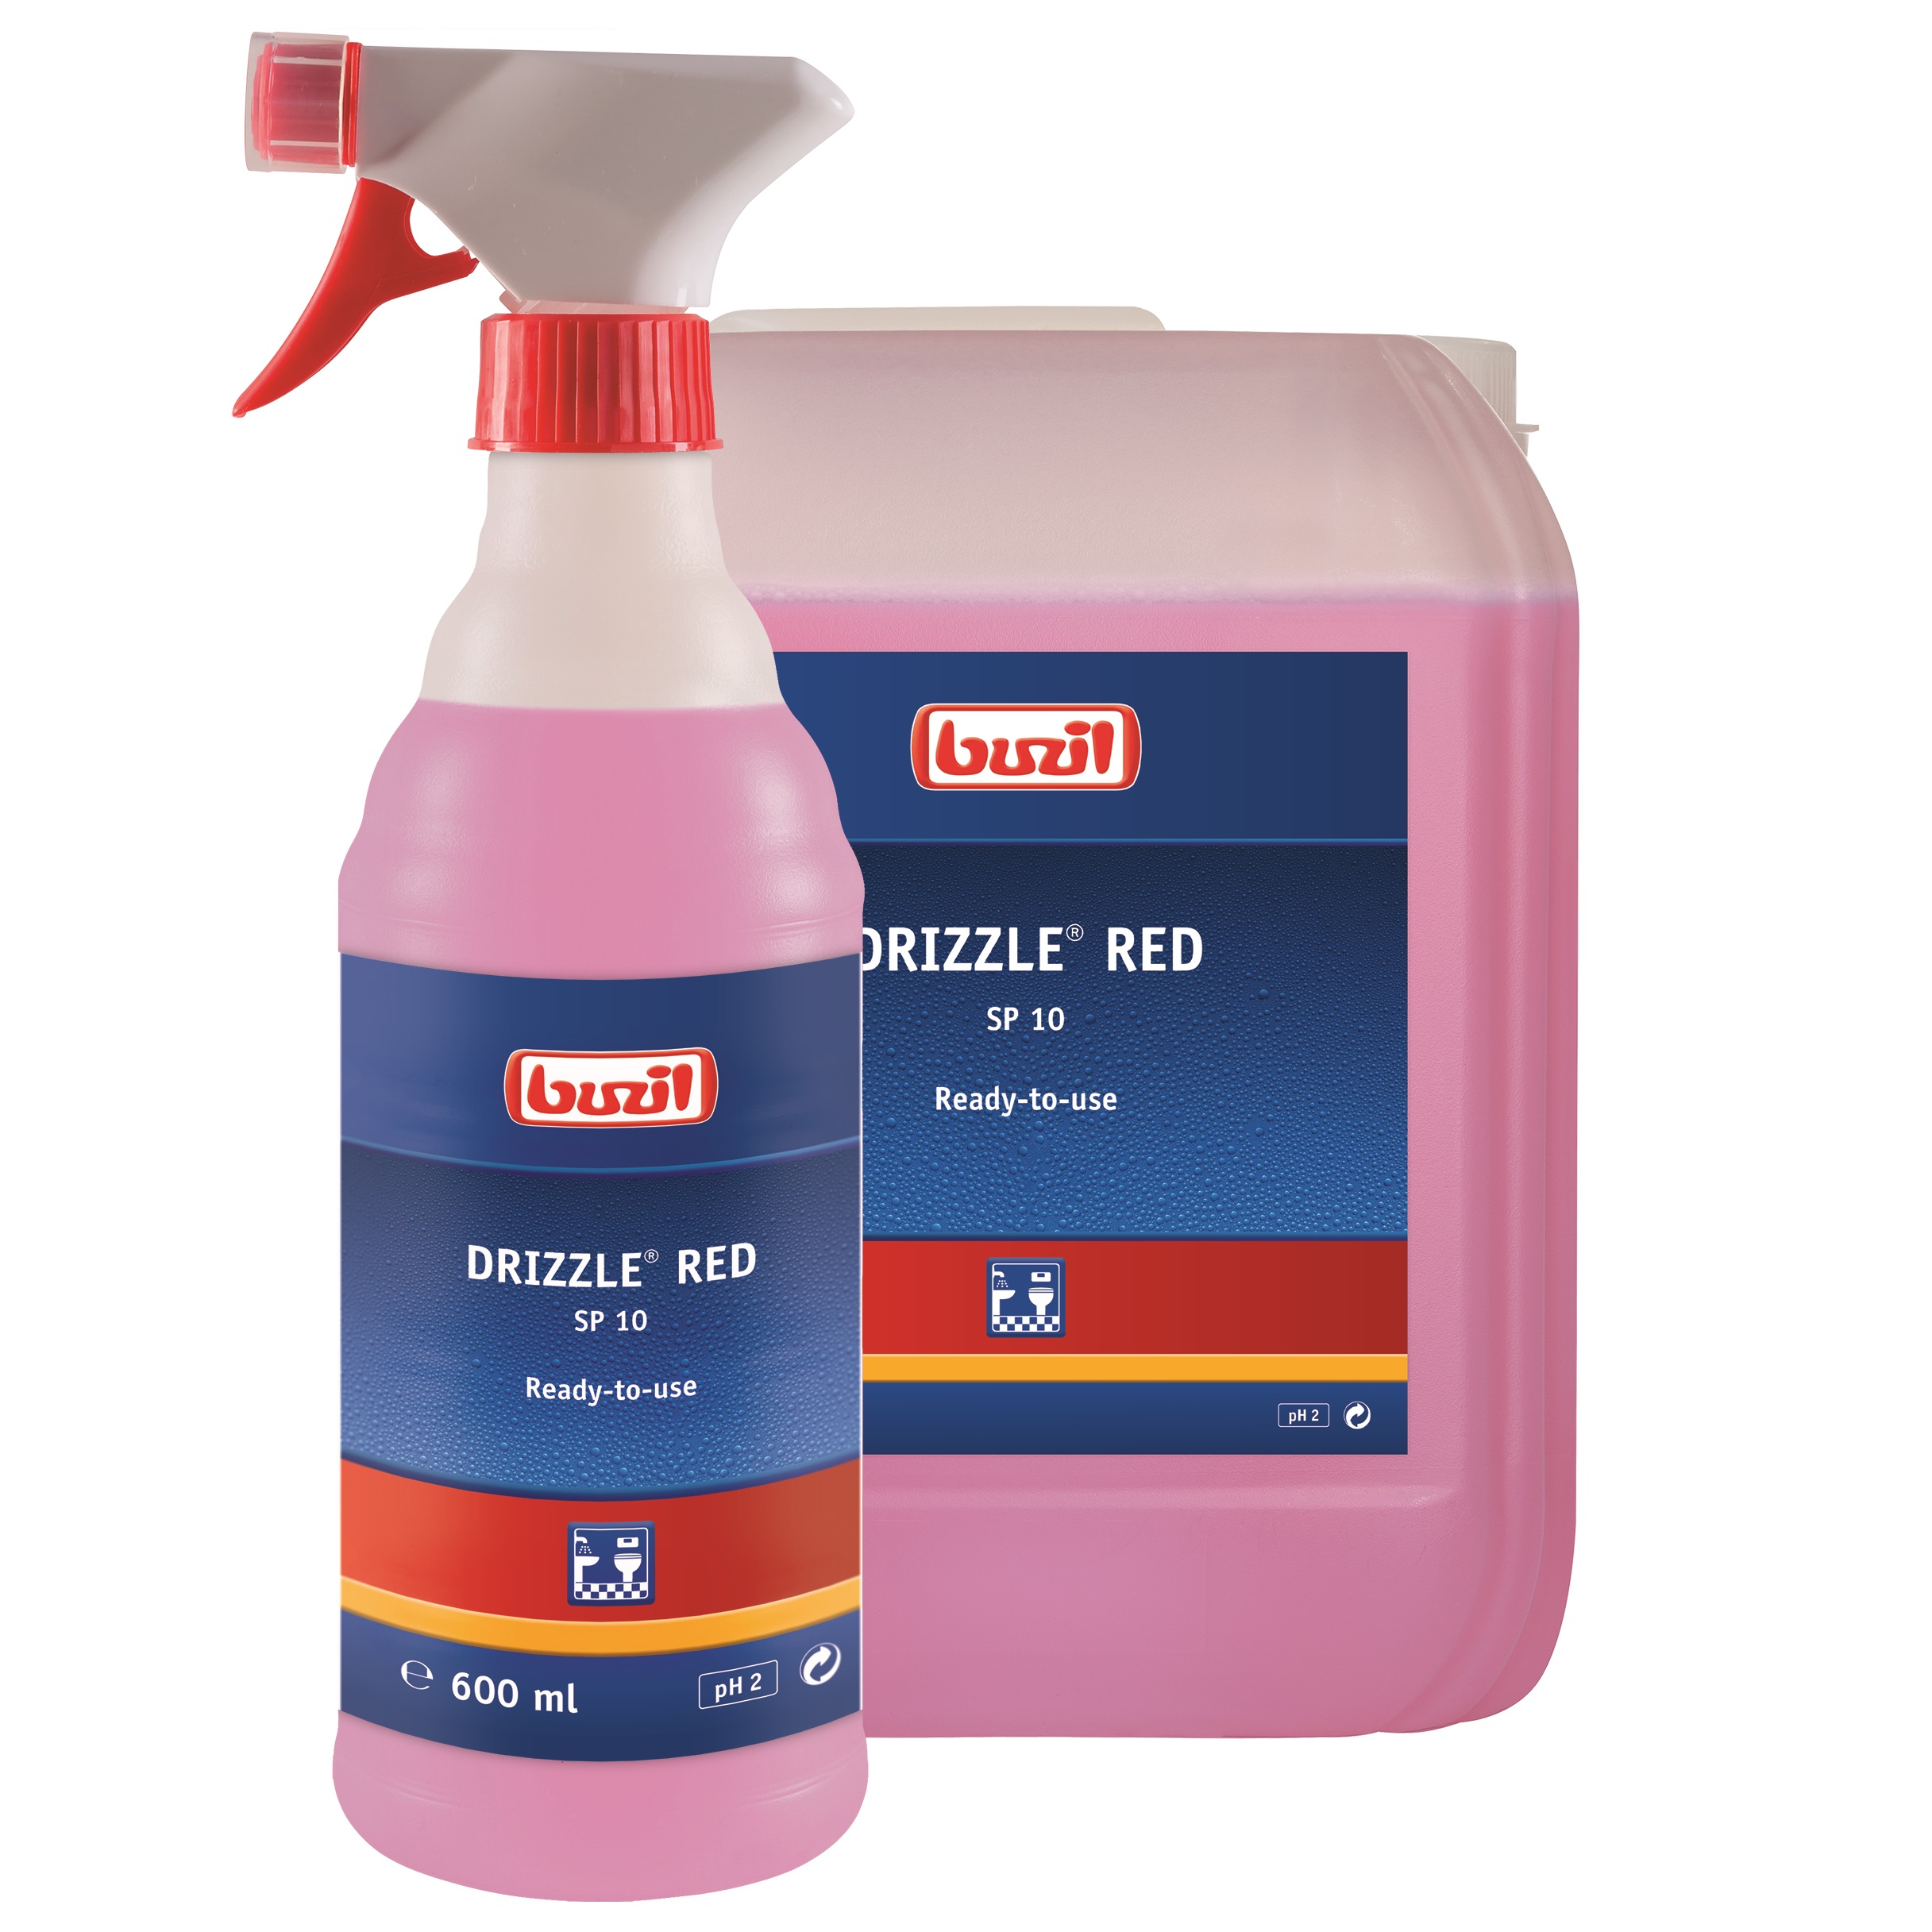 Buzil Drizzle Red SP 10, Gebrauchsfertiger saurer Sanitär-Schaumreiniger 0,6 L Flasche